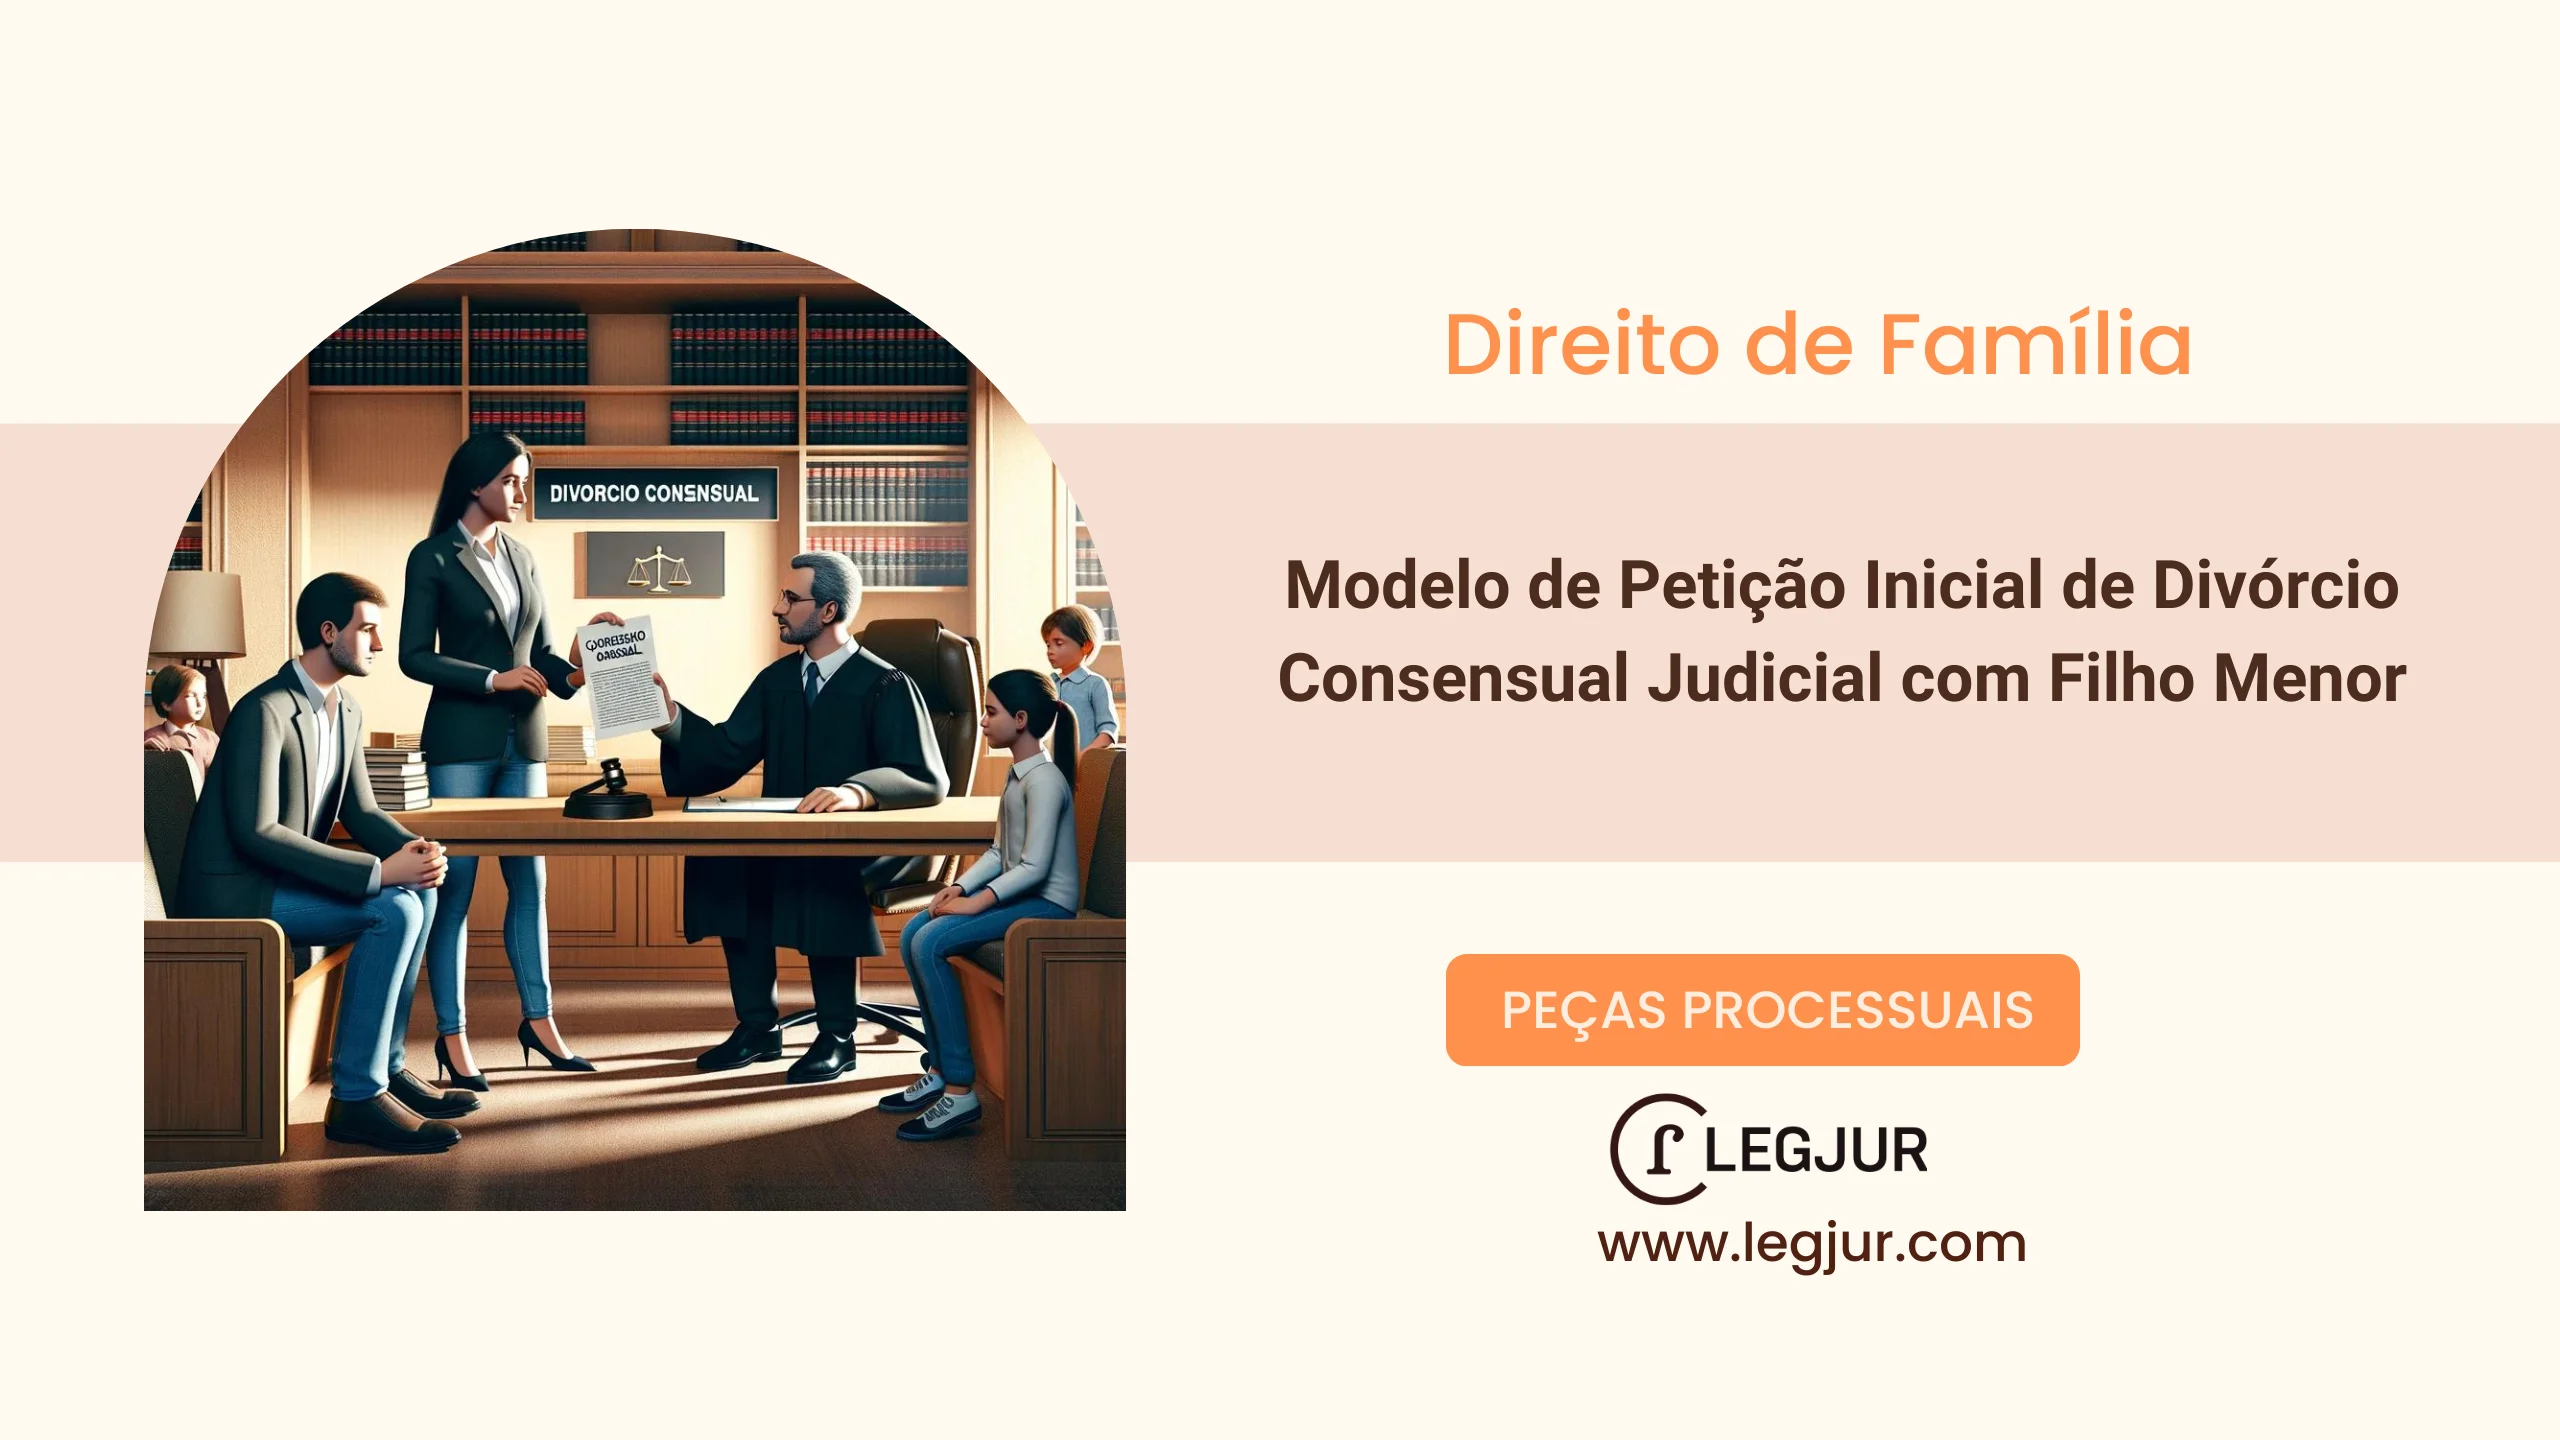 Modelo de Petição Inicial de Divórcio Consensual Judicial com Filho Menor